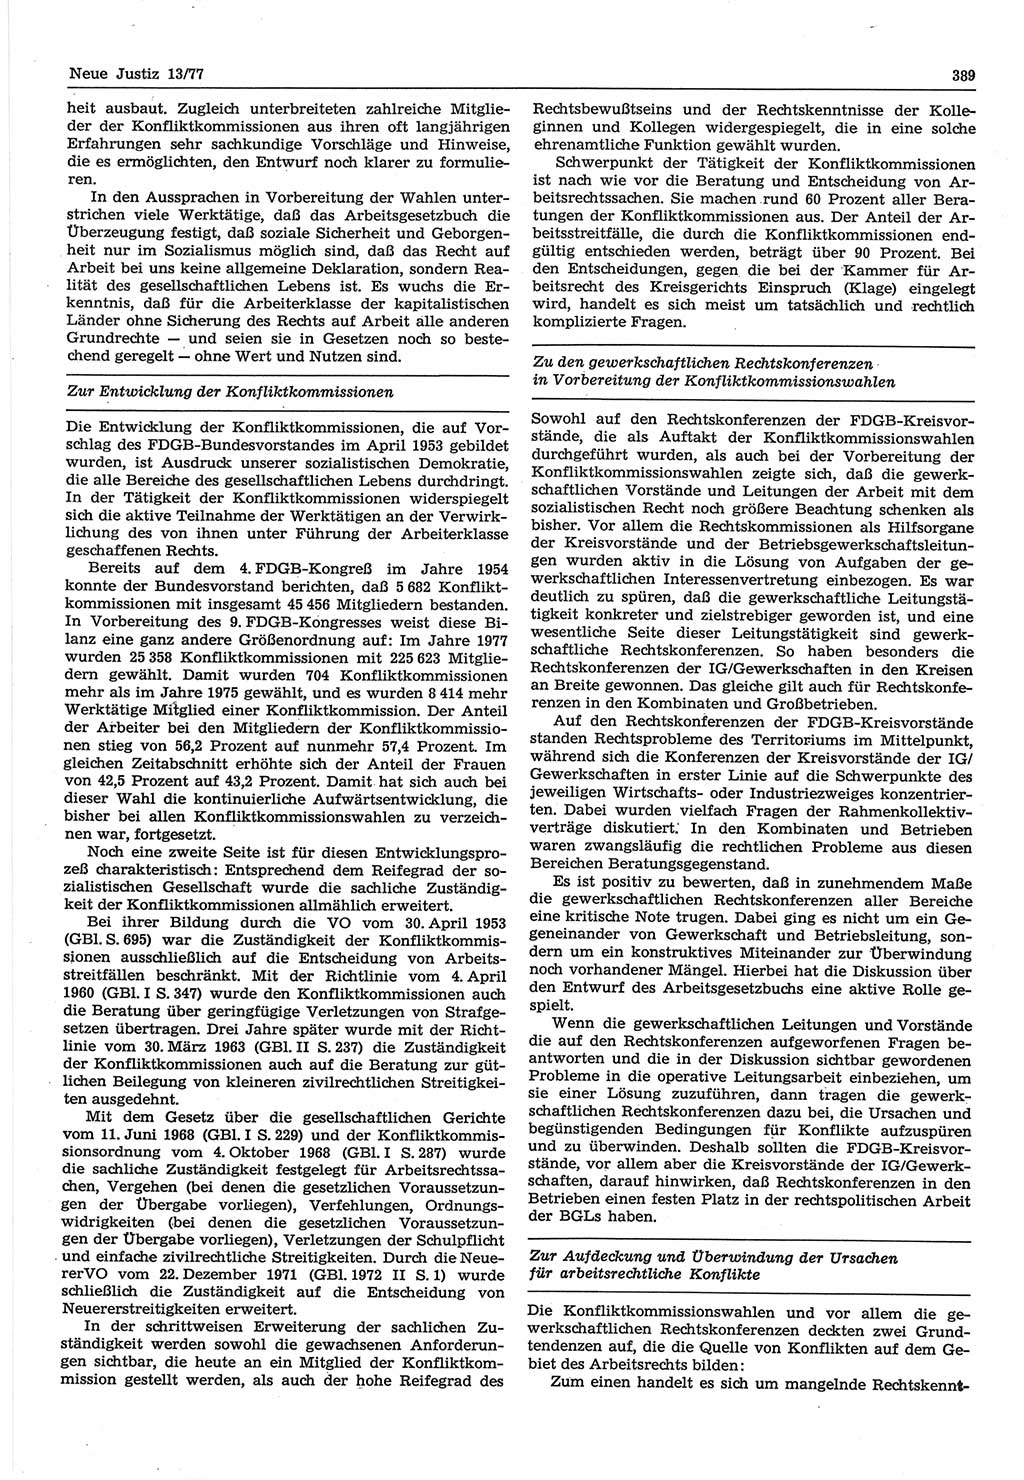 Neue Justiz (NJ), Zeitschrift für Recht und Rechtswissenschaft-Zeitschrift, sozialistisches Recht und Gesetzlichkeit, 31. Jahrgang 1977, Seite 389 (NJ DDR 1977, S. 389)